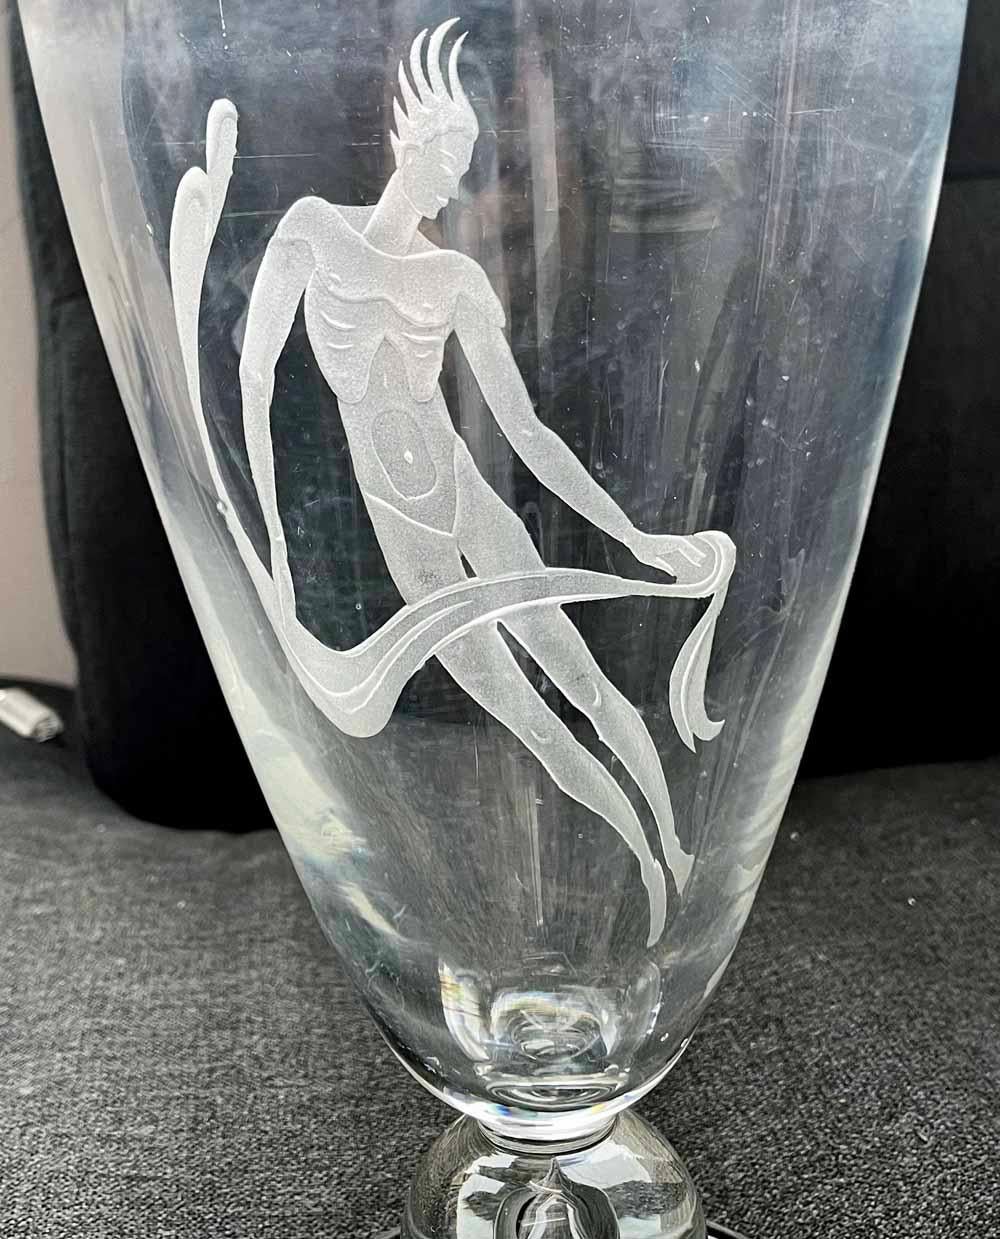 Grand, rare et impressionnant, ce vase en verre sablé de Franz Grosz représente une figure masculine nue flottant dans les airs - peut-être un danseur en train de s'élancer du plancher de la scène - tenant une longueur de draperie qui flotte dans la